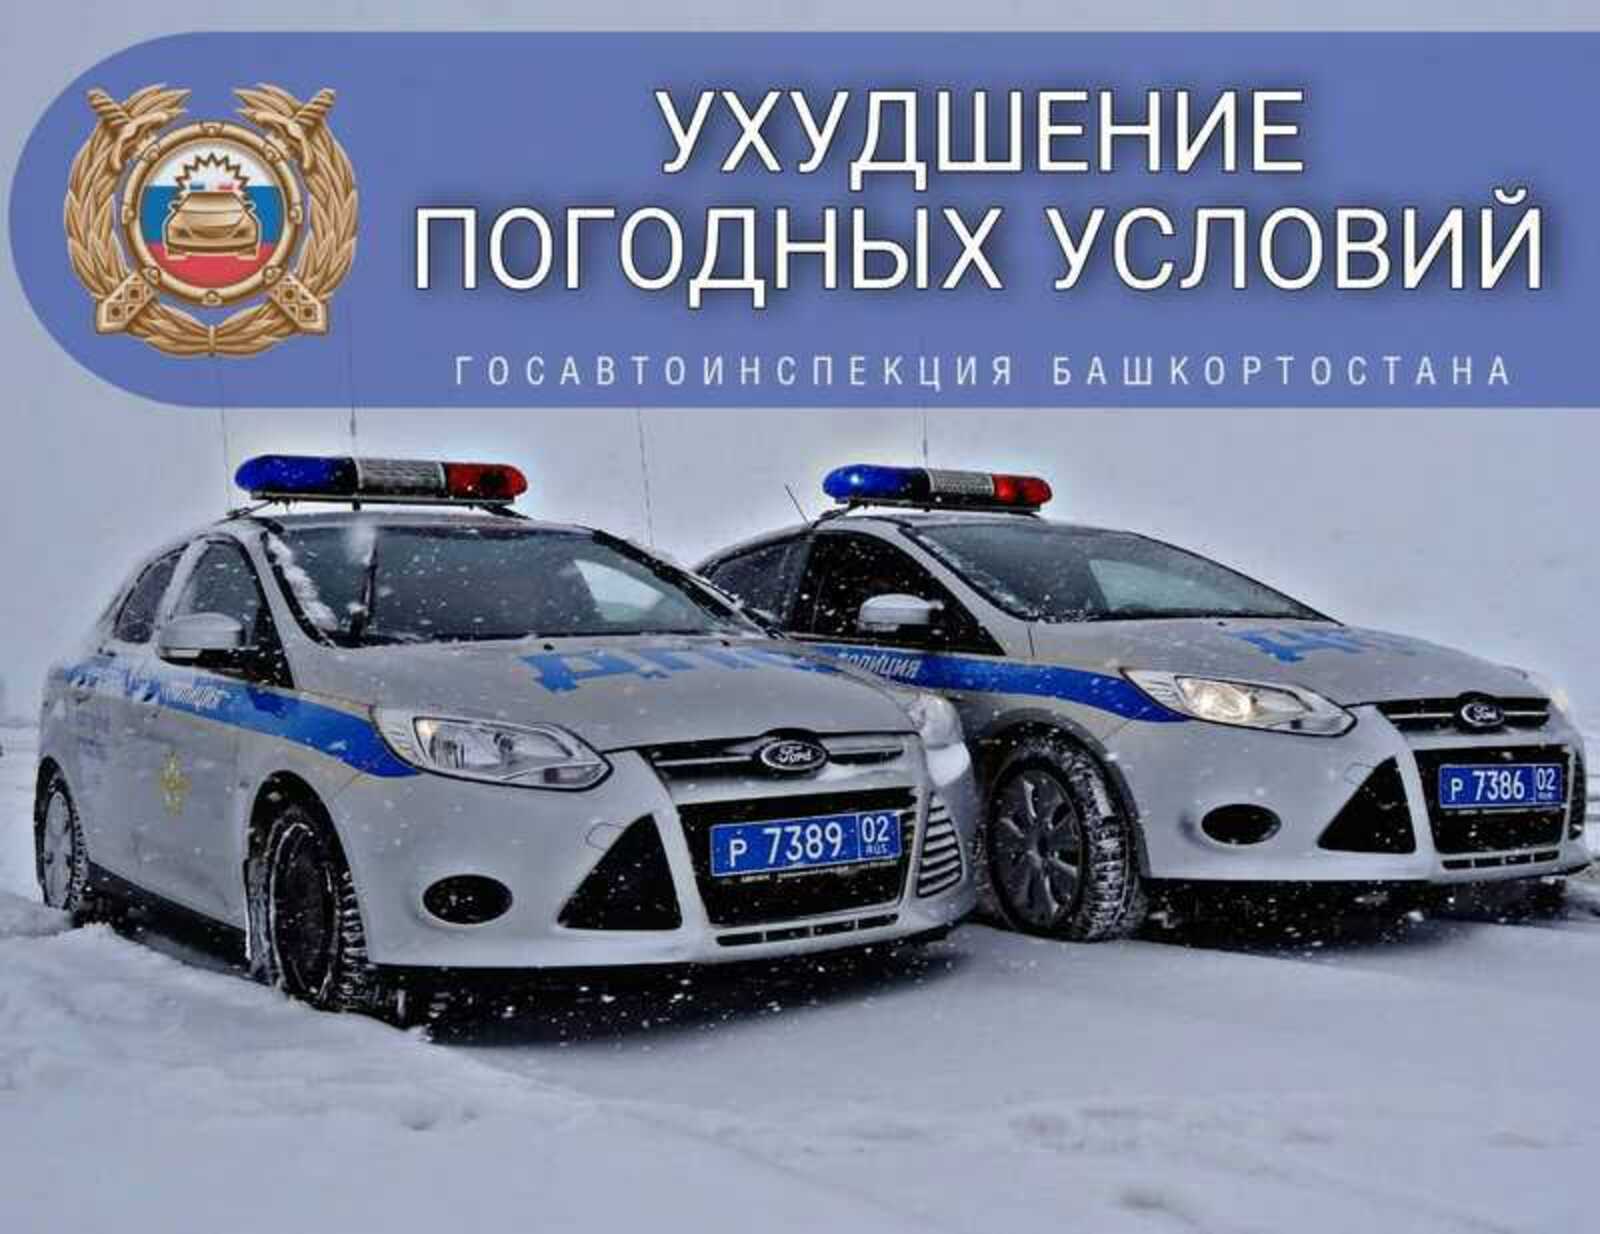 В связи с ухудшением погоды ГИБДД Башкирии просит водителей не выезжать за пределы населенных пунктов